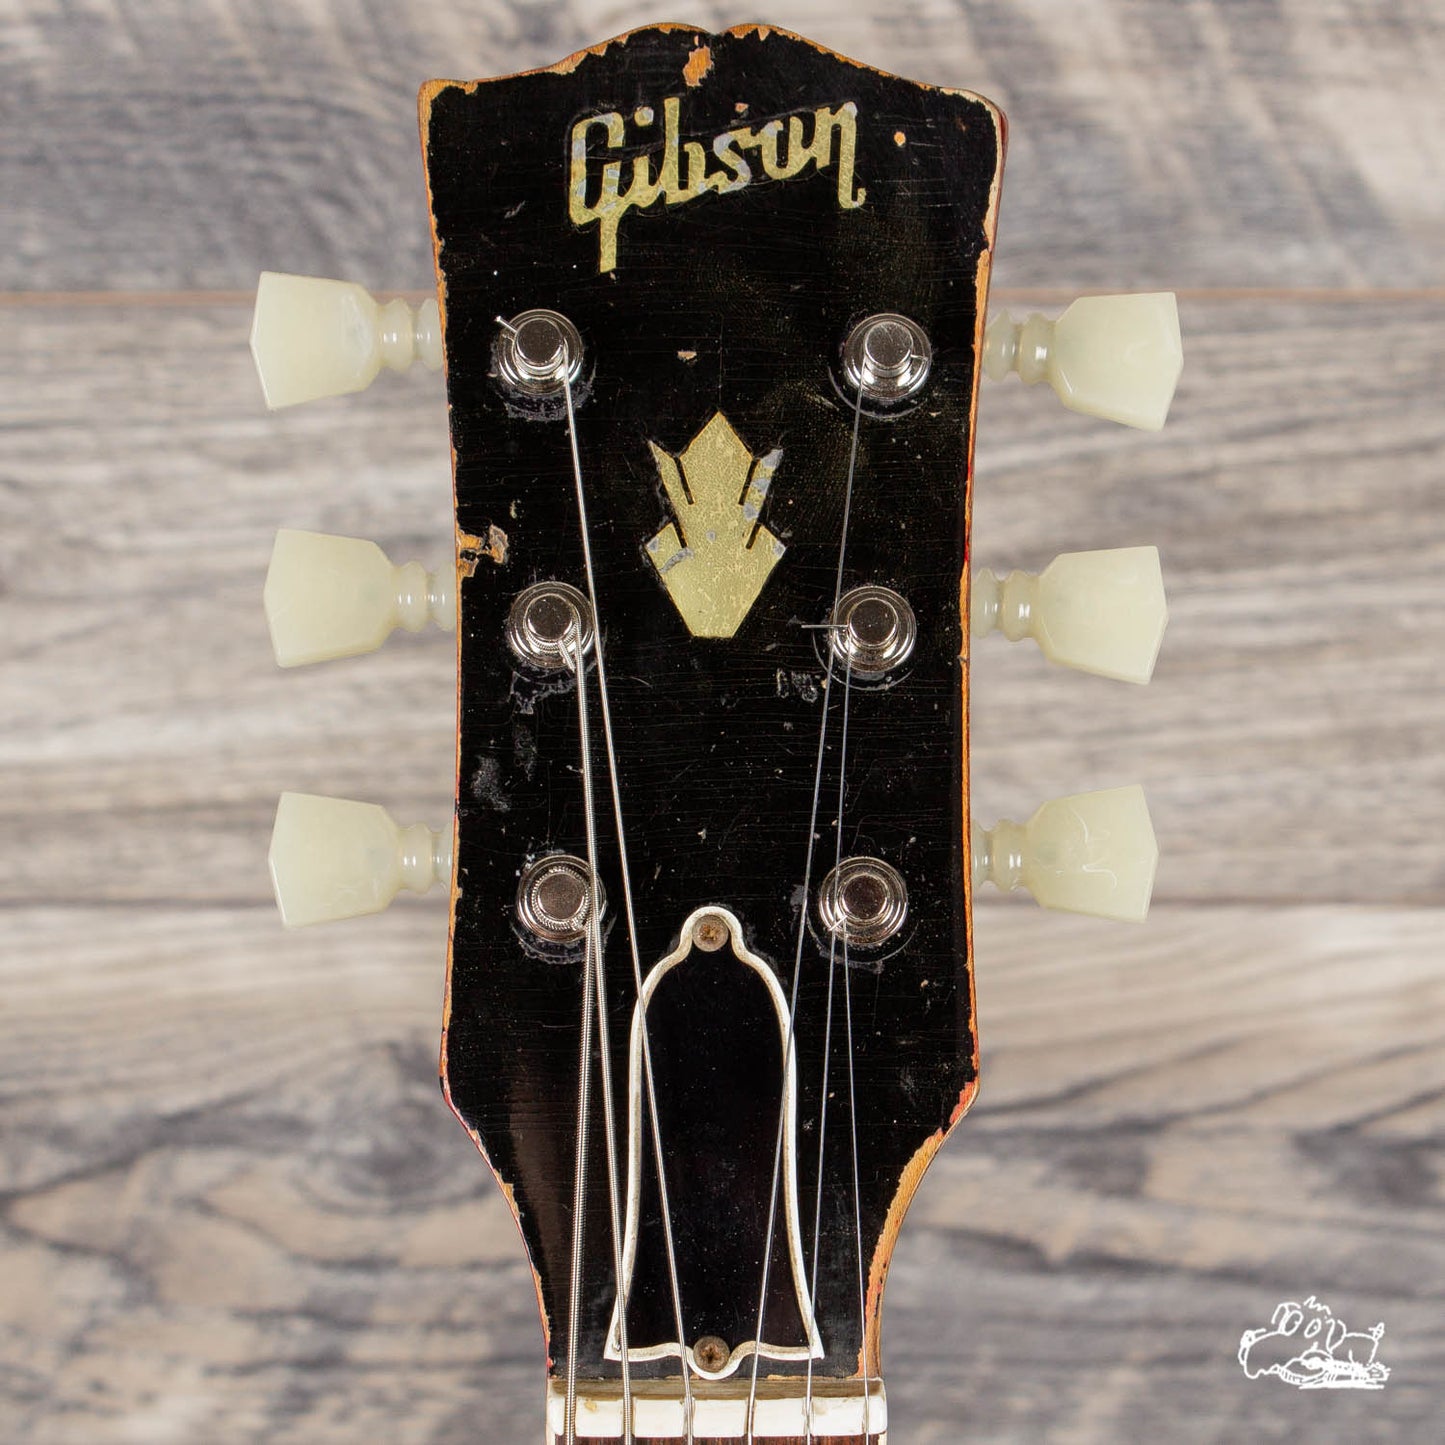 1964 Gibson ES-335